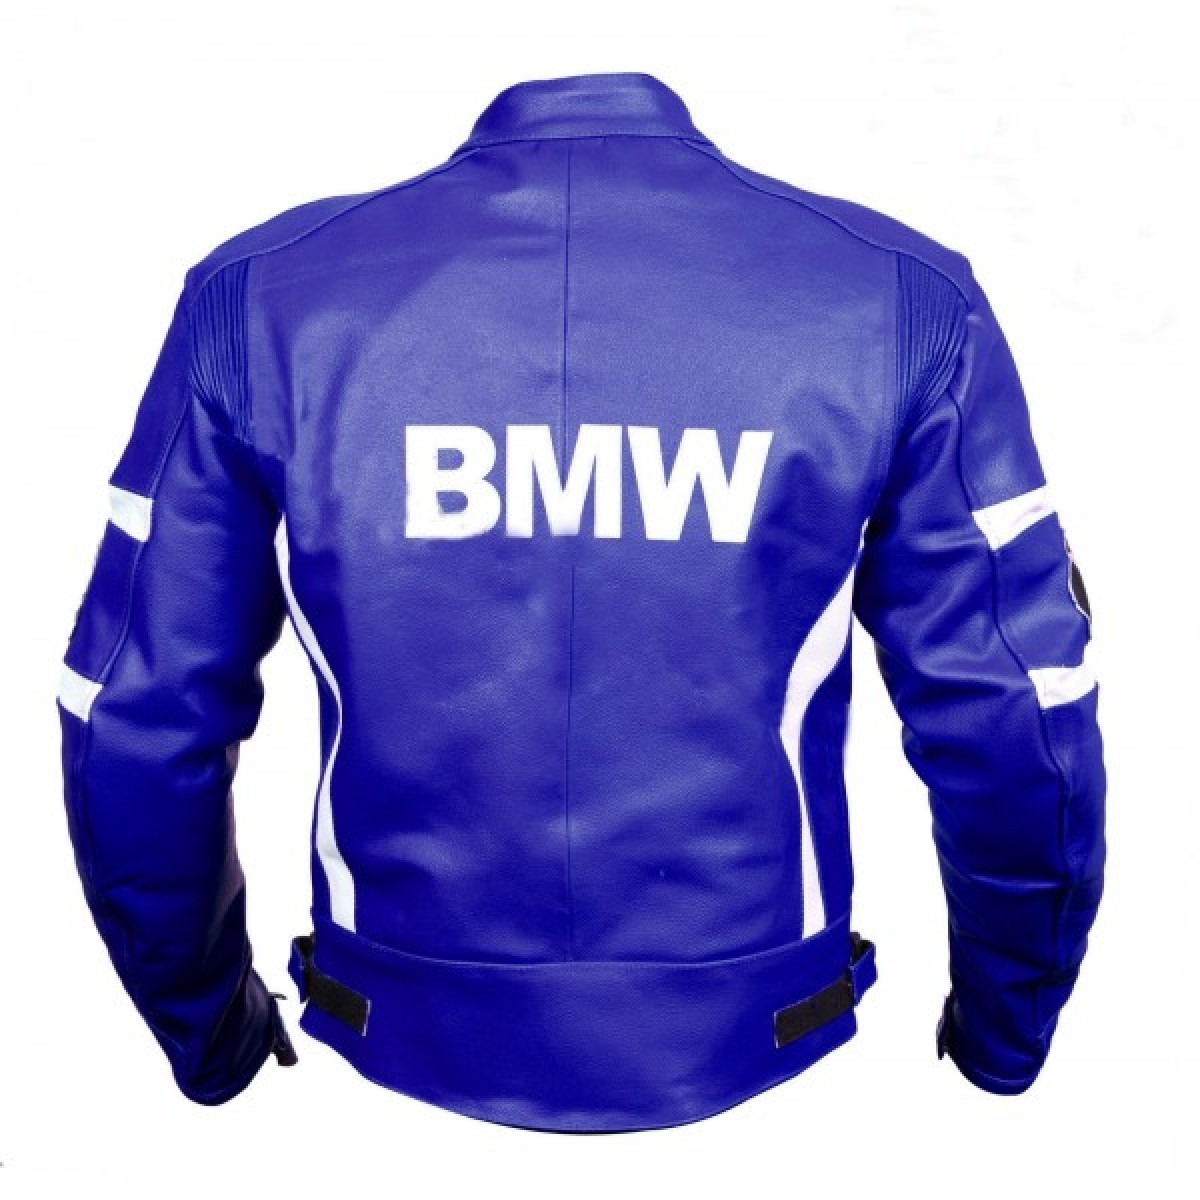 NEW BMW BLUE SPORT LEATHER SUIT JACKET MEN'S 2019 - Men's Clothing